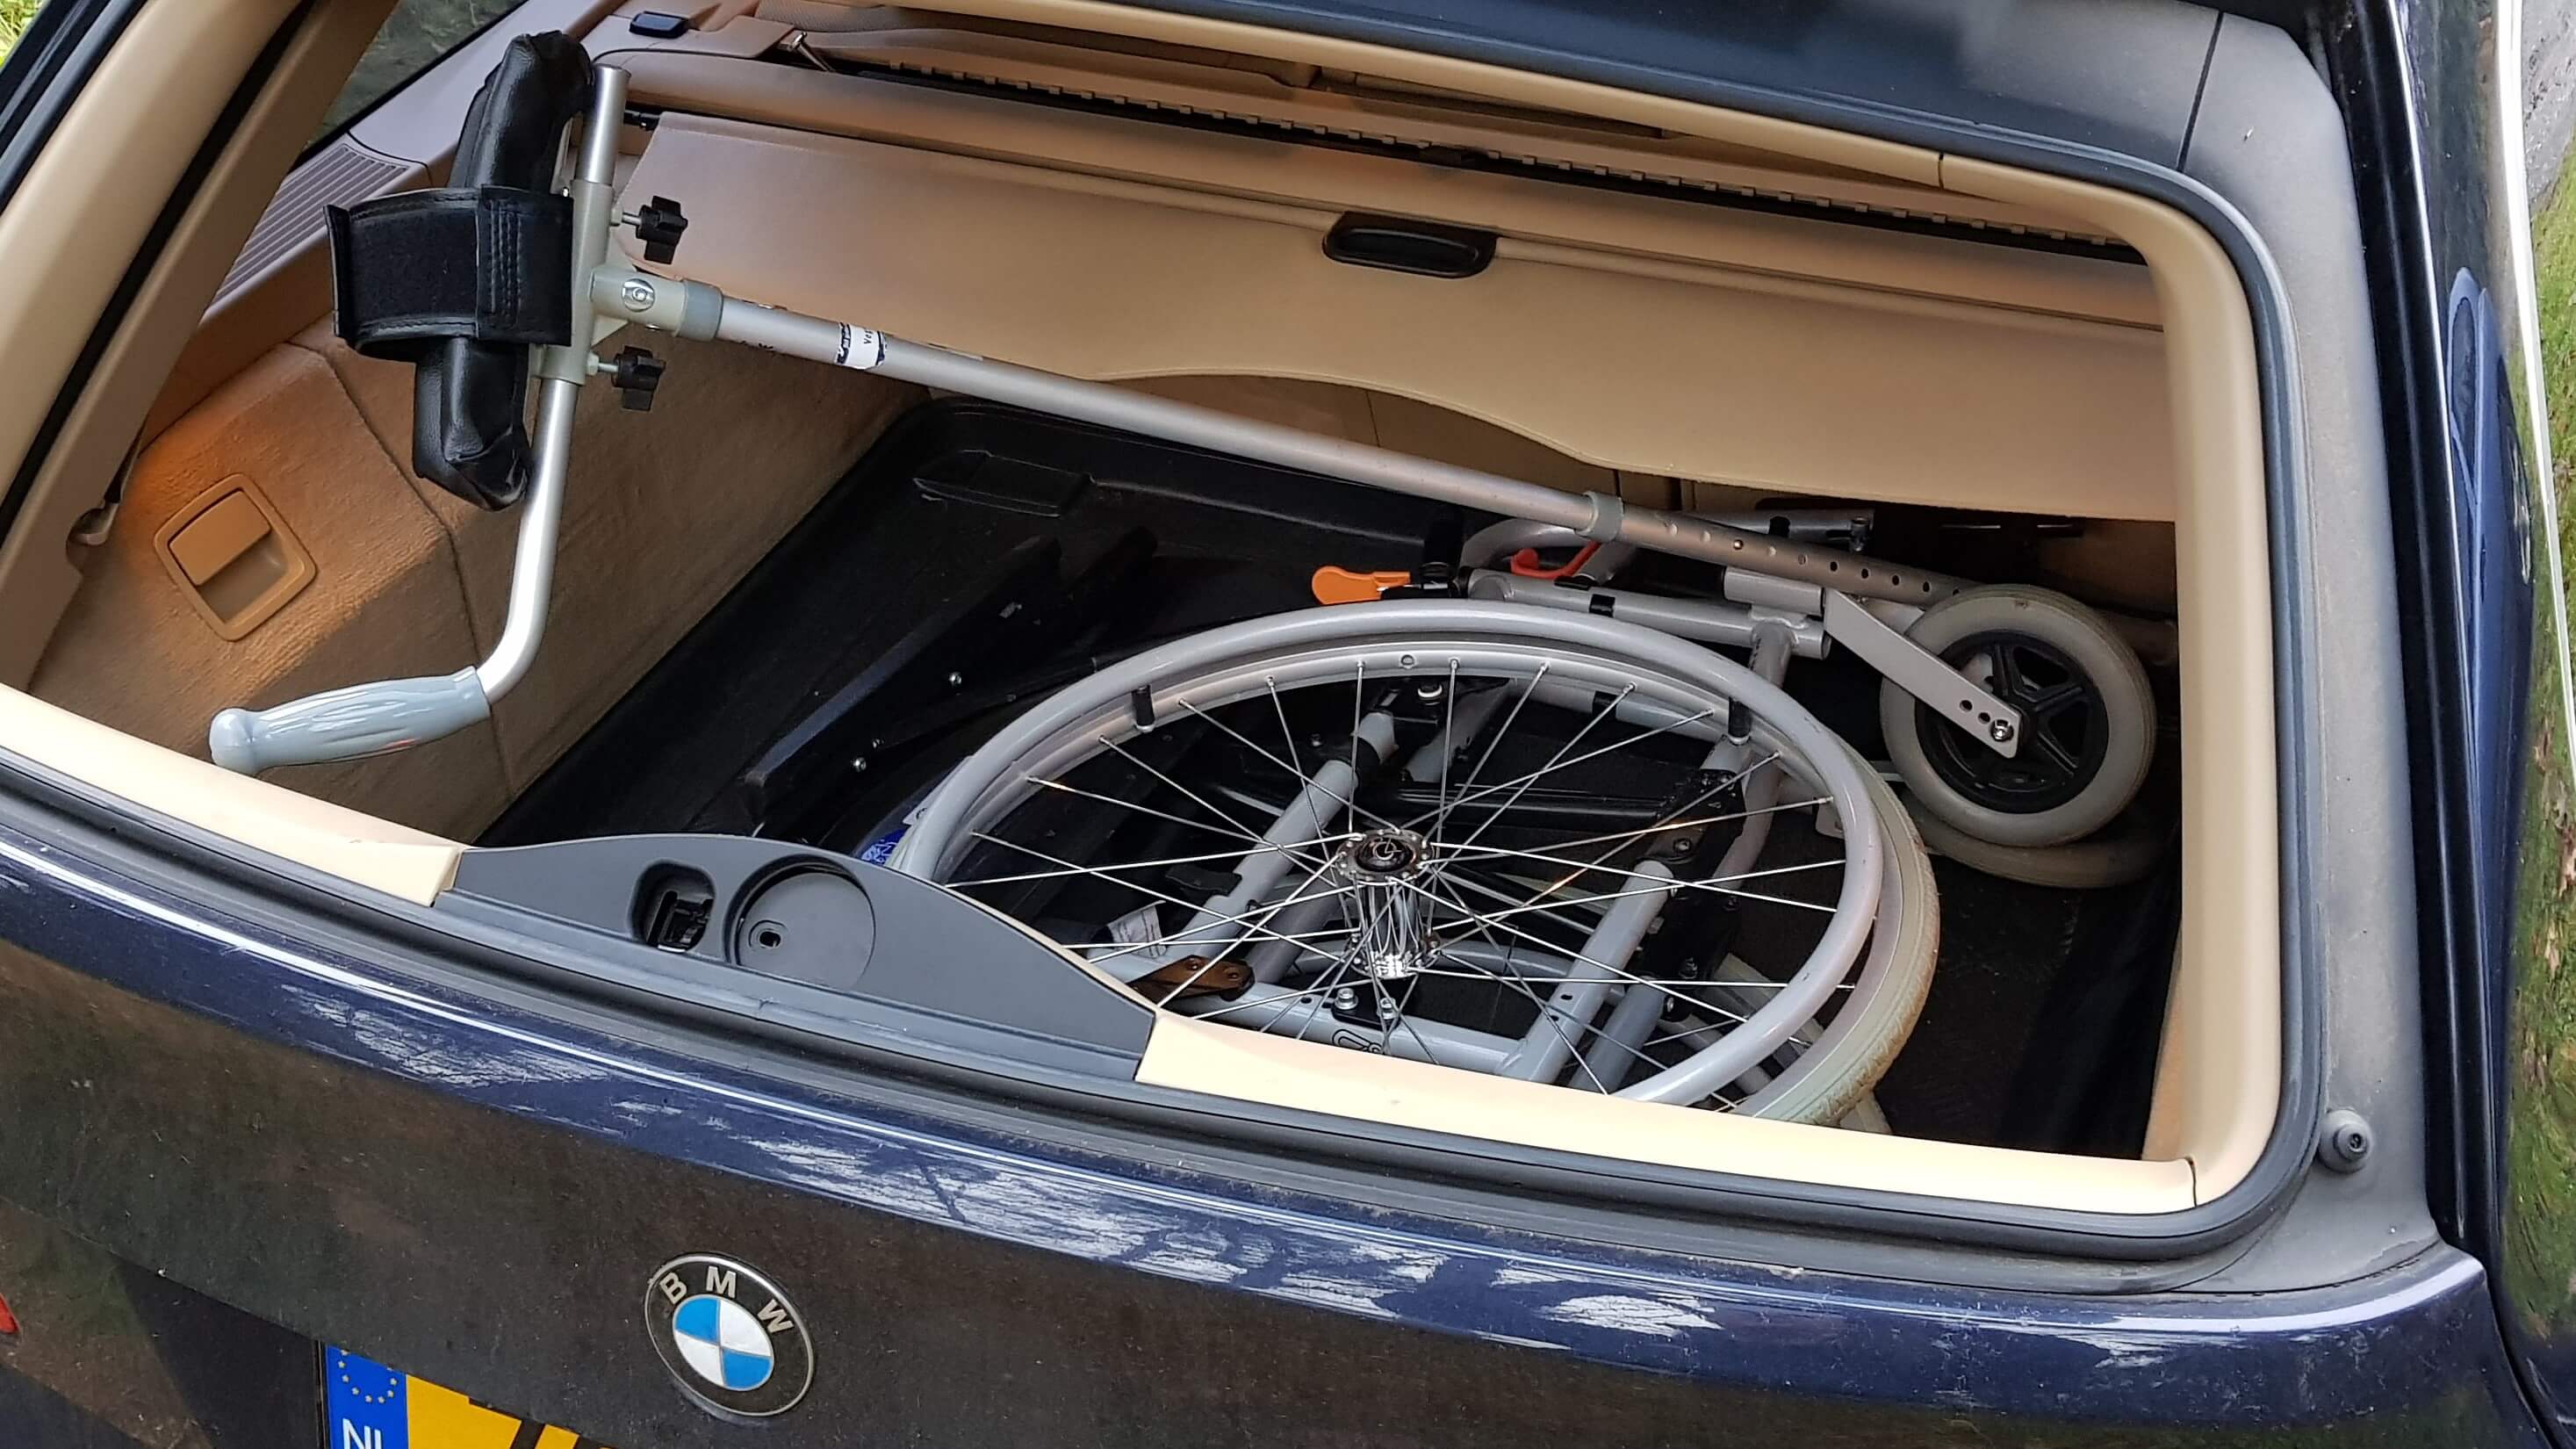 Foto over mijn gevecht met de ziekte van bechterew en de benodigde opvouwbare rolstoel en onderarmschaalkruk achterin de auto